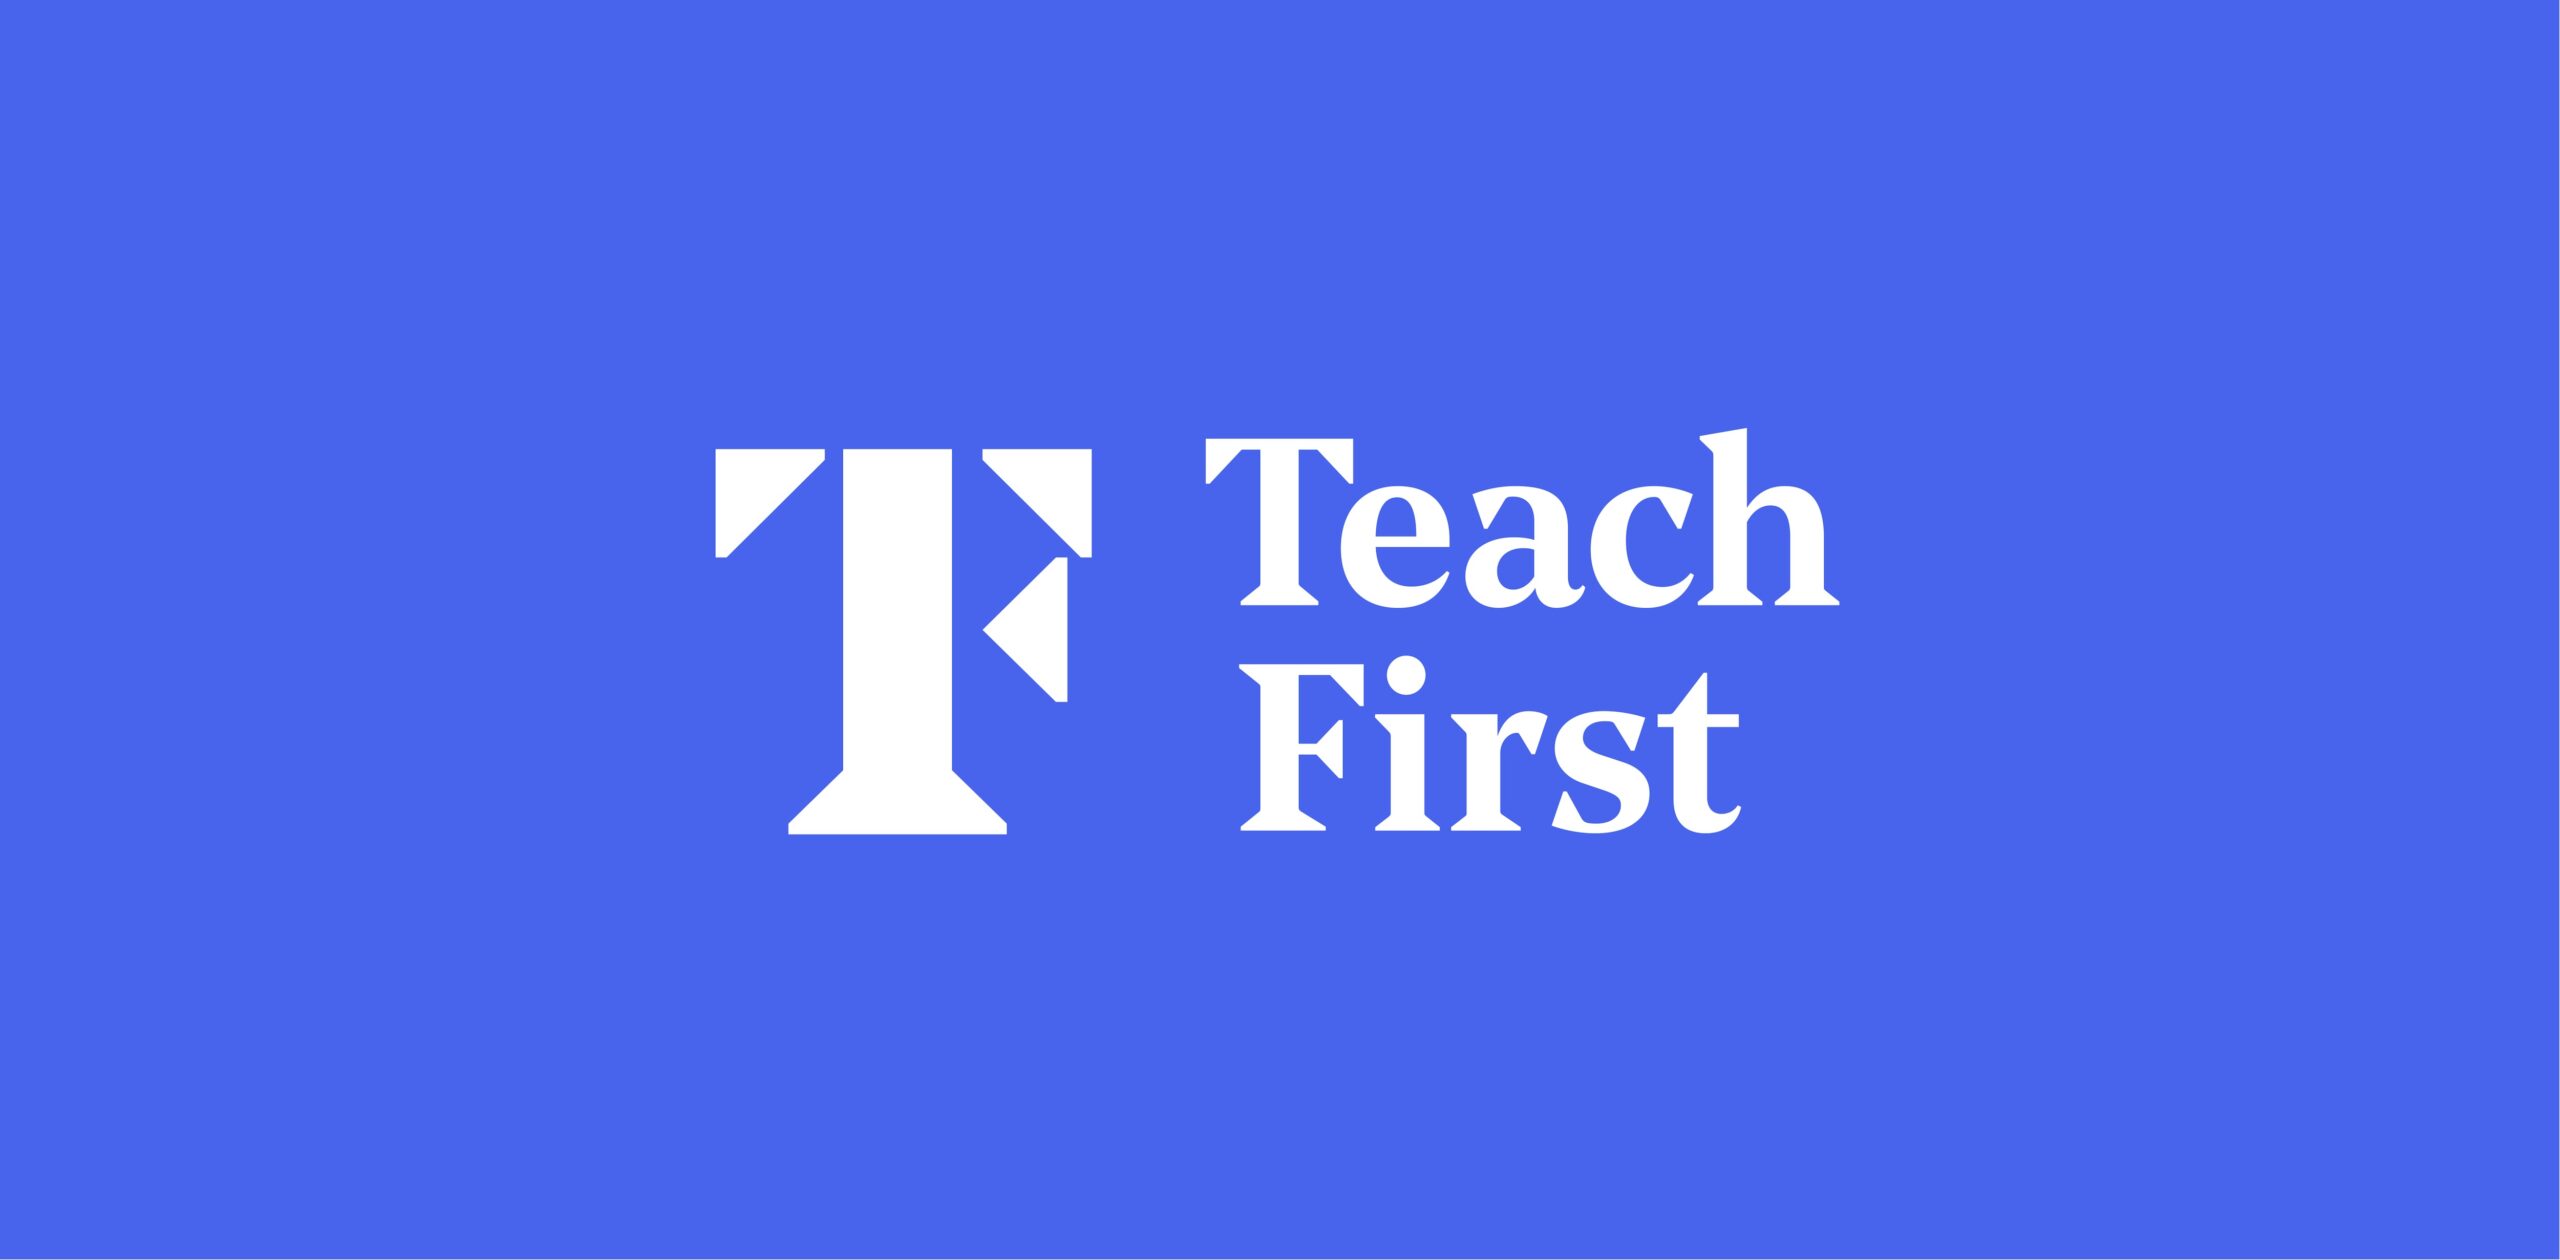 Teach First